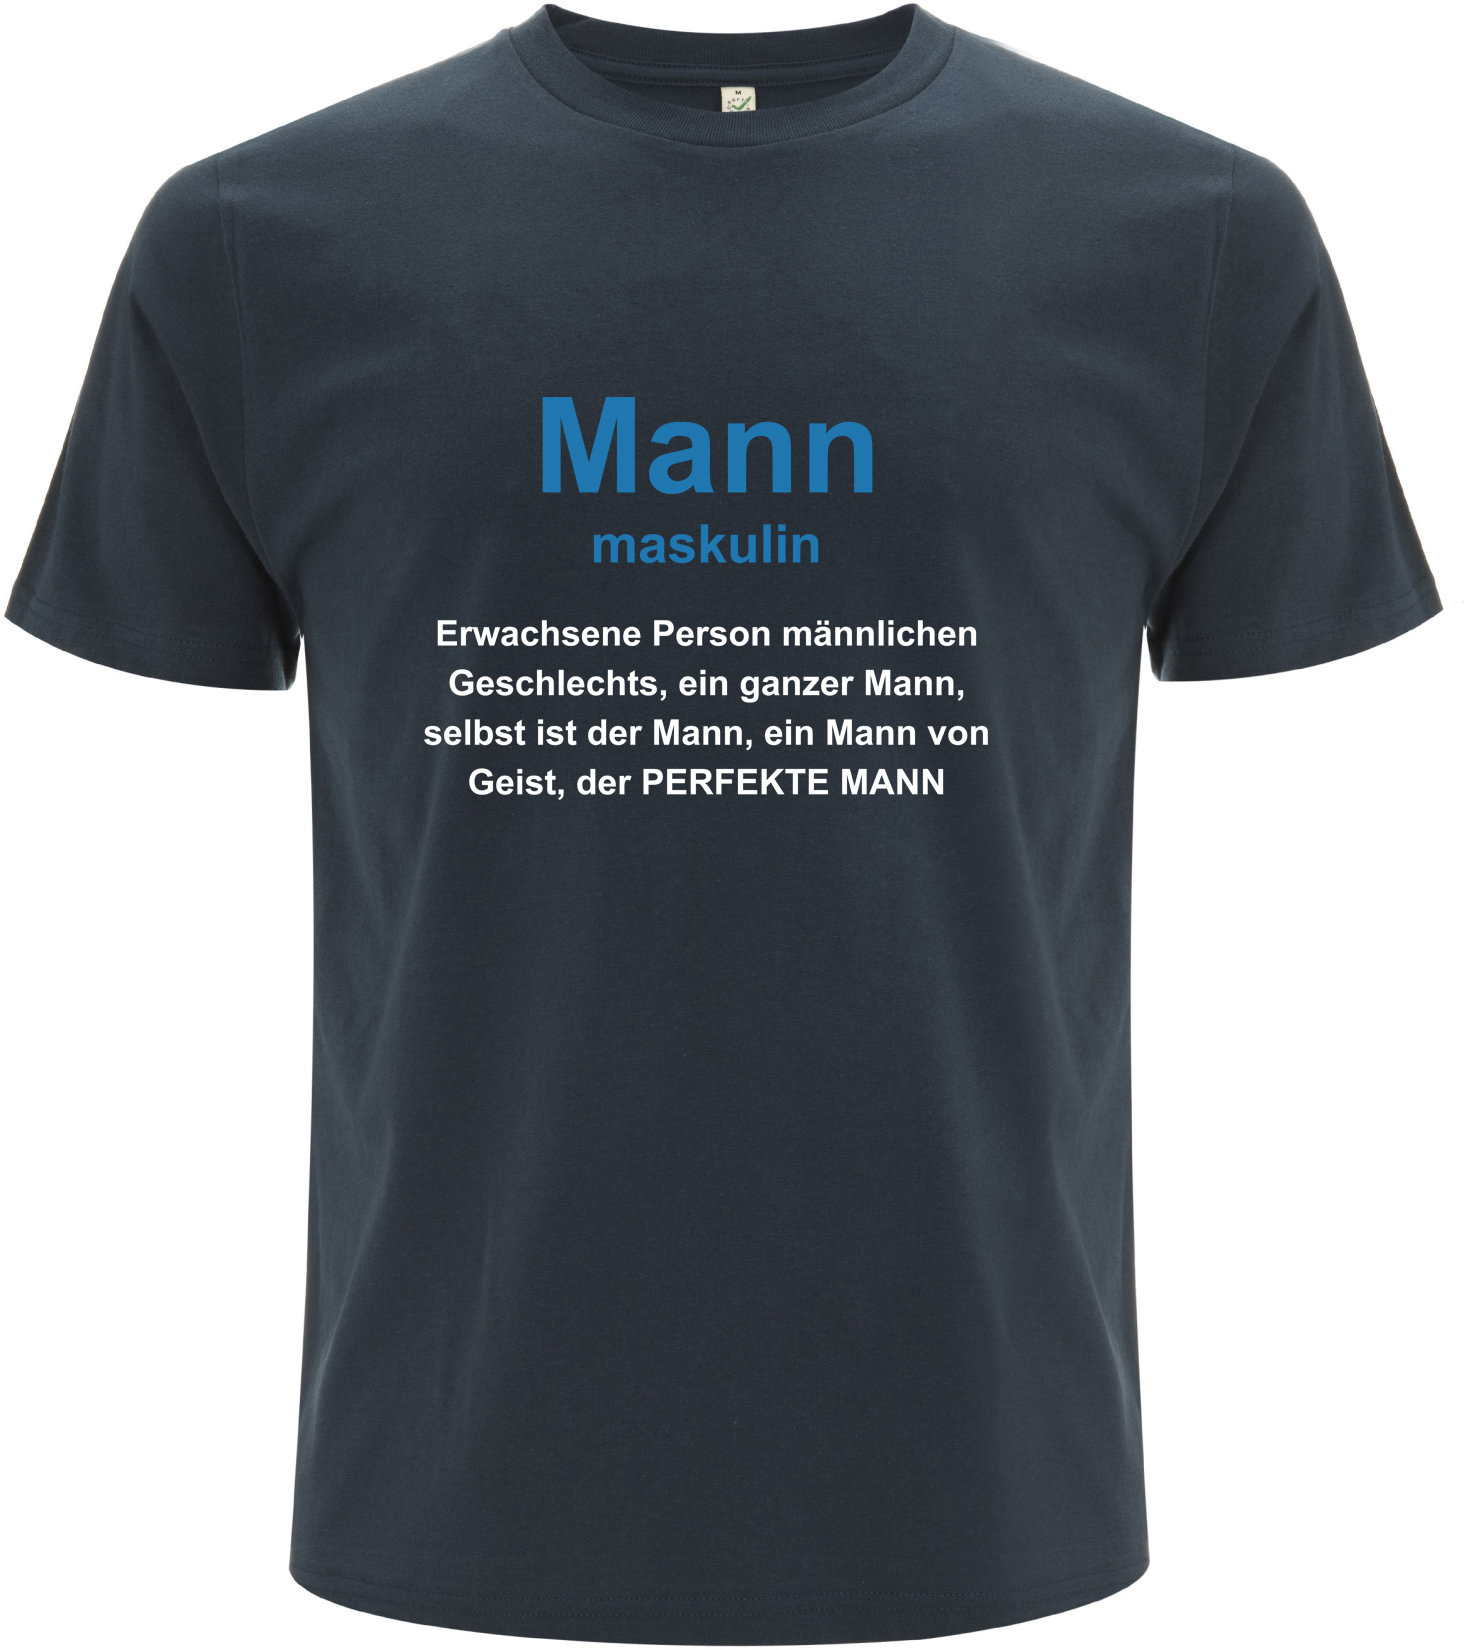 Duden Mann maskulin | Organic T-Shirt xl